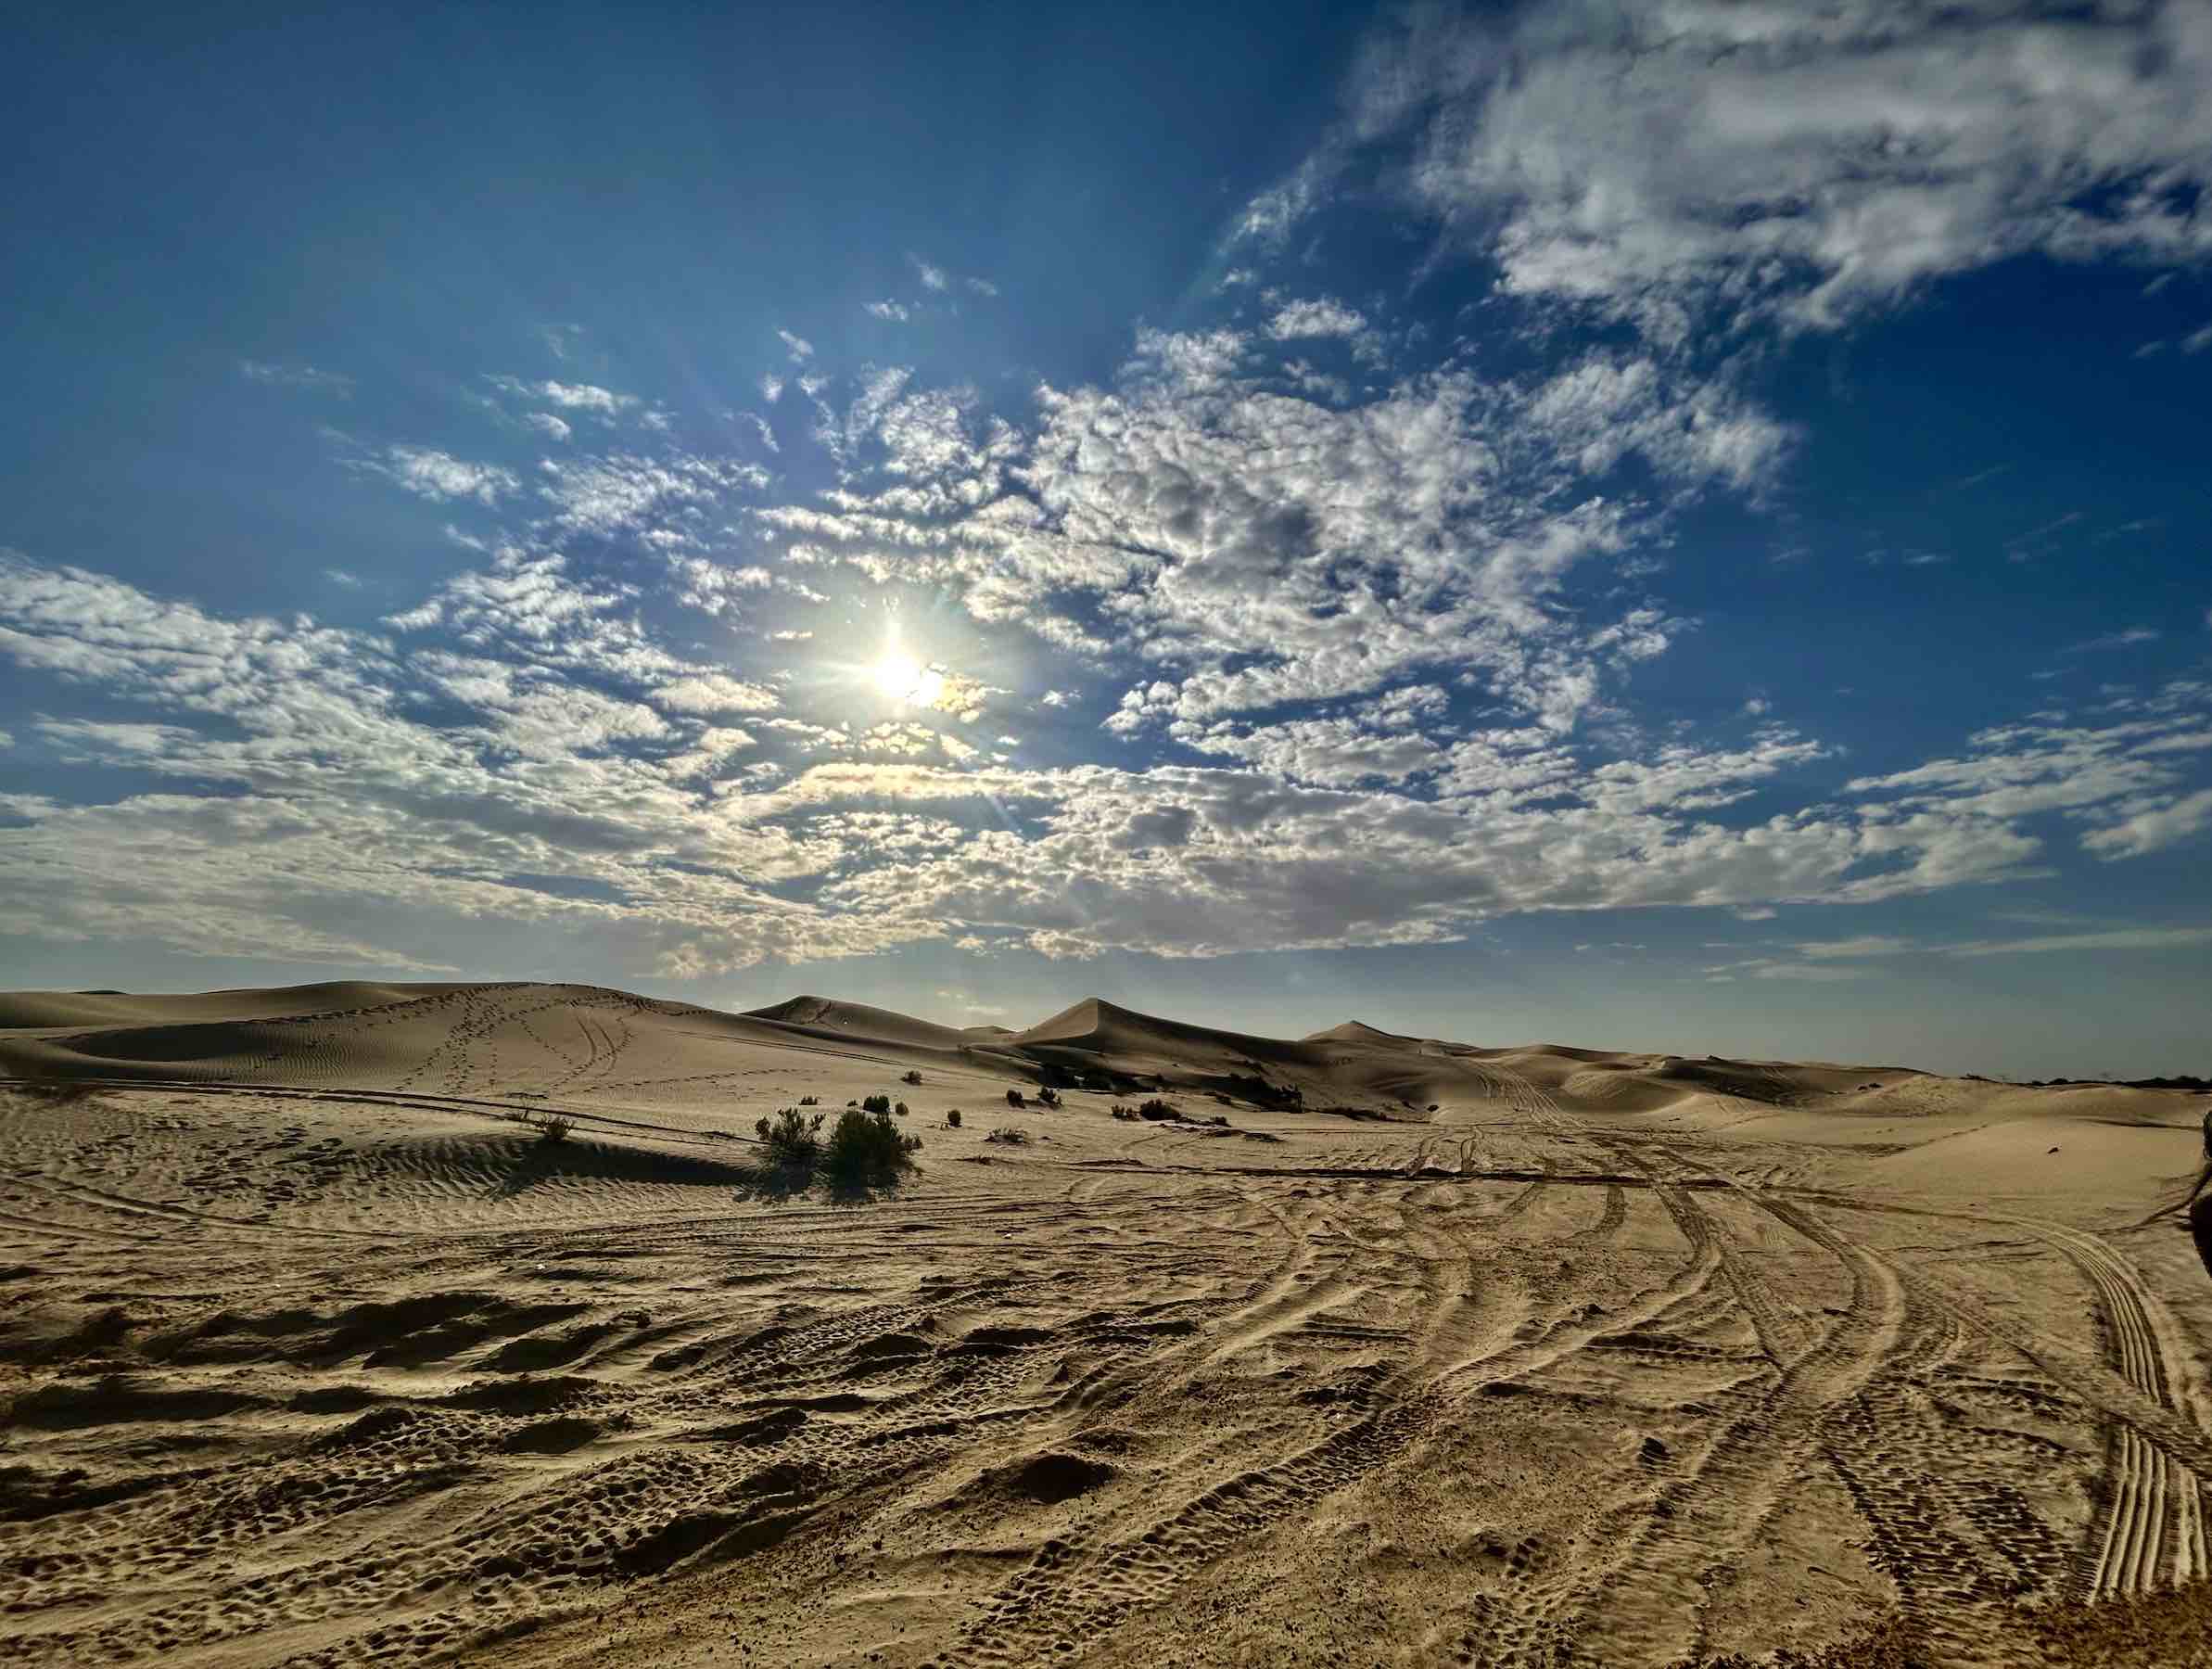 Al Wathba Desert